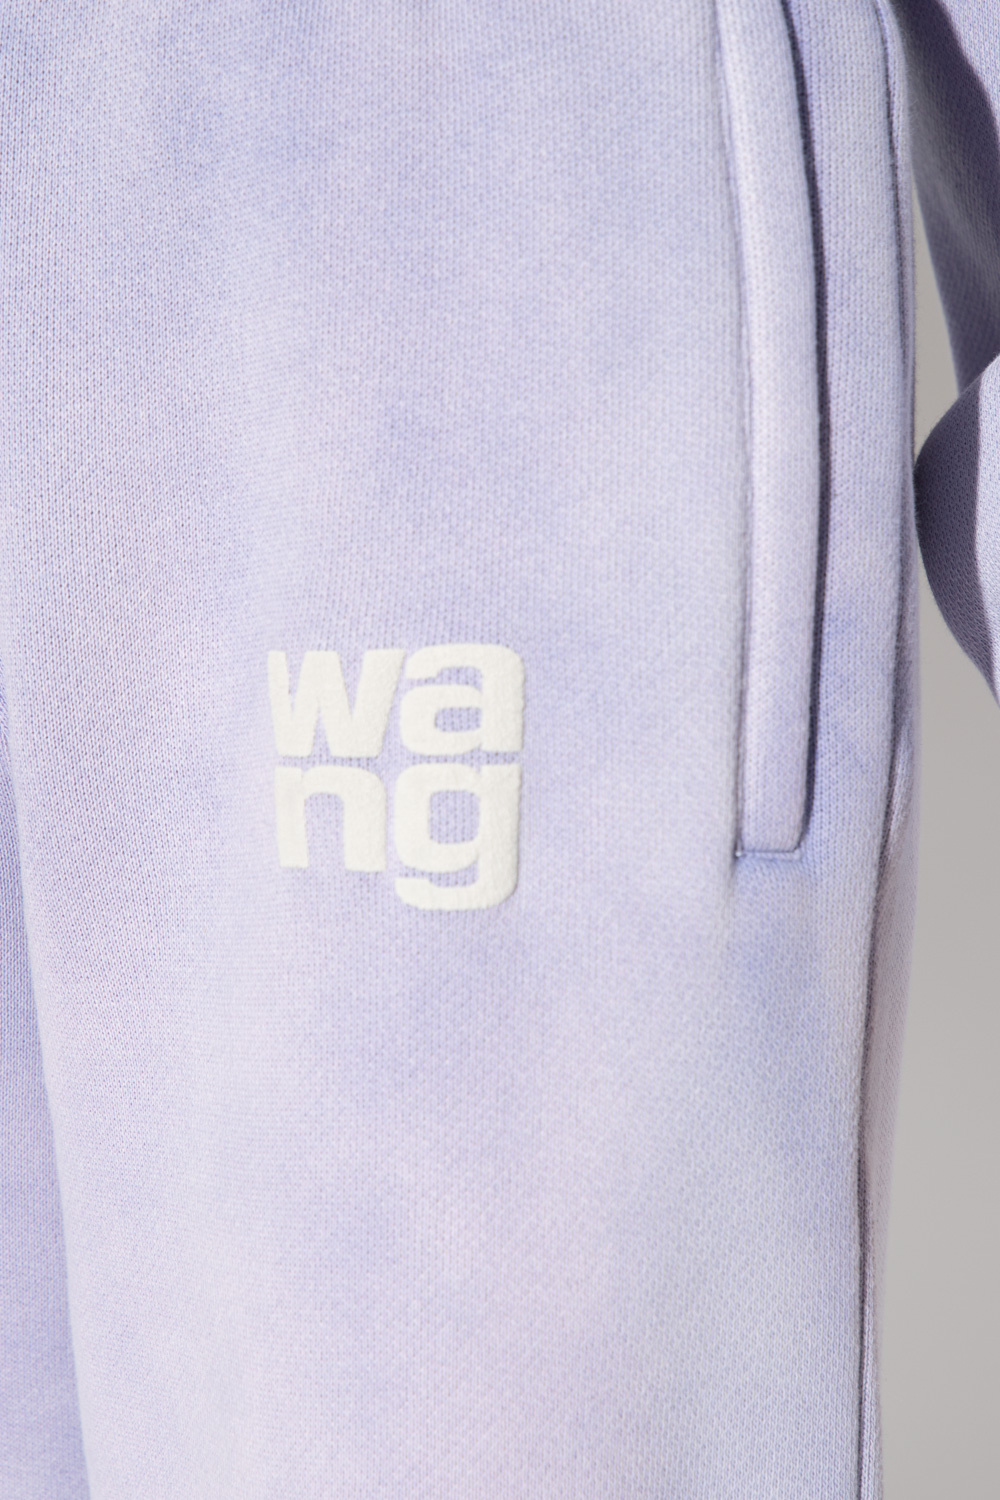 T by Alexander Wang Givenchy Kids bandana-pattern sweatshirt dress Purple